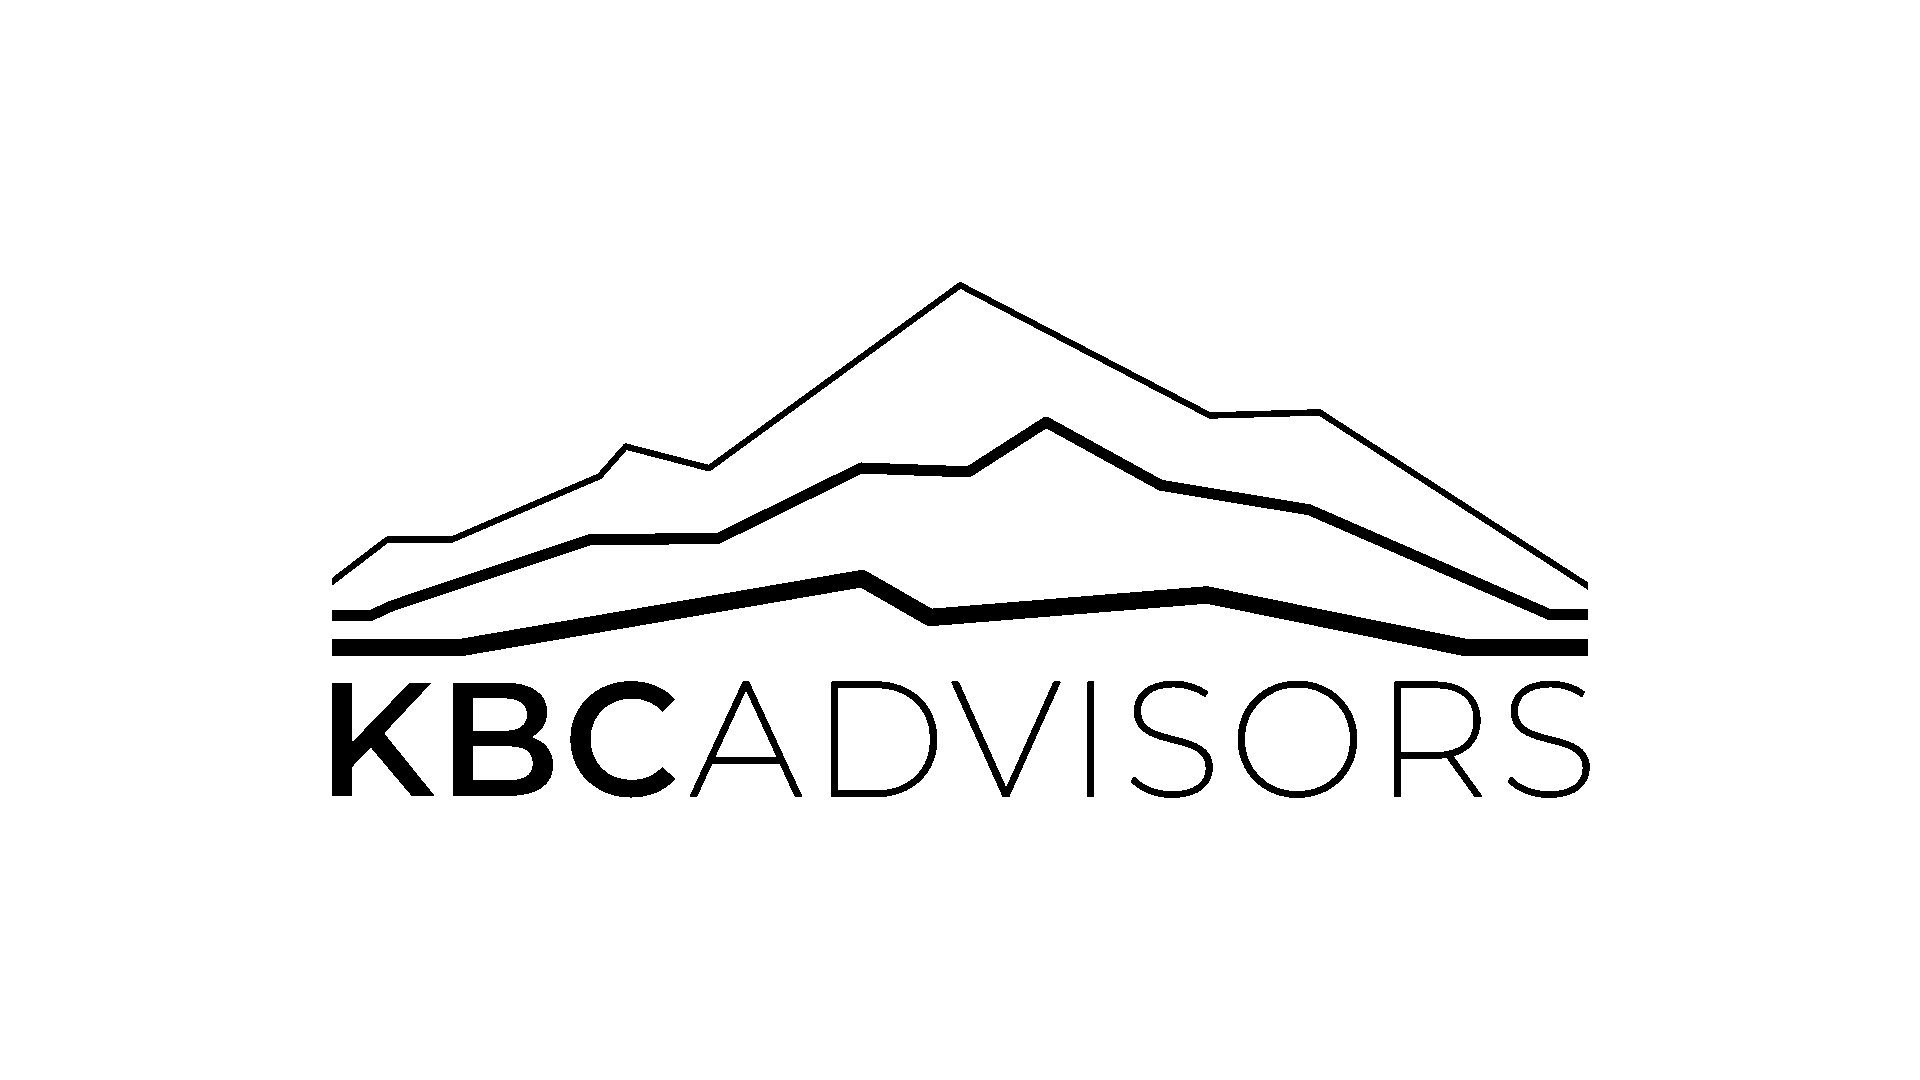 kcbadvisors-logo